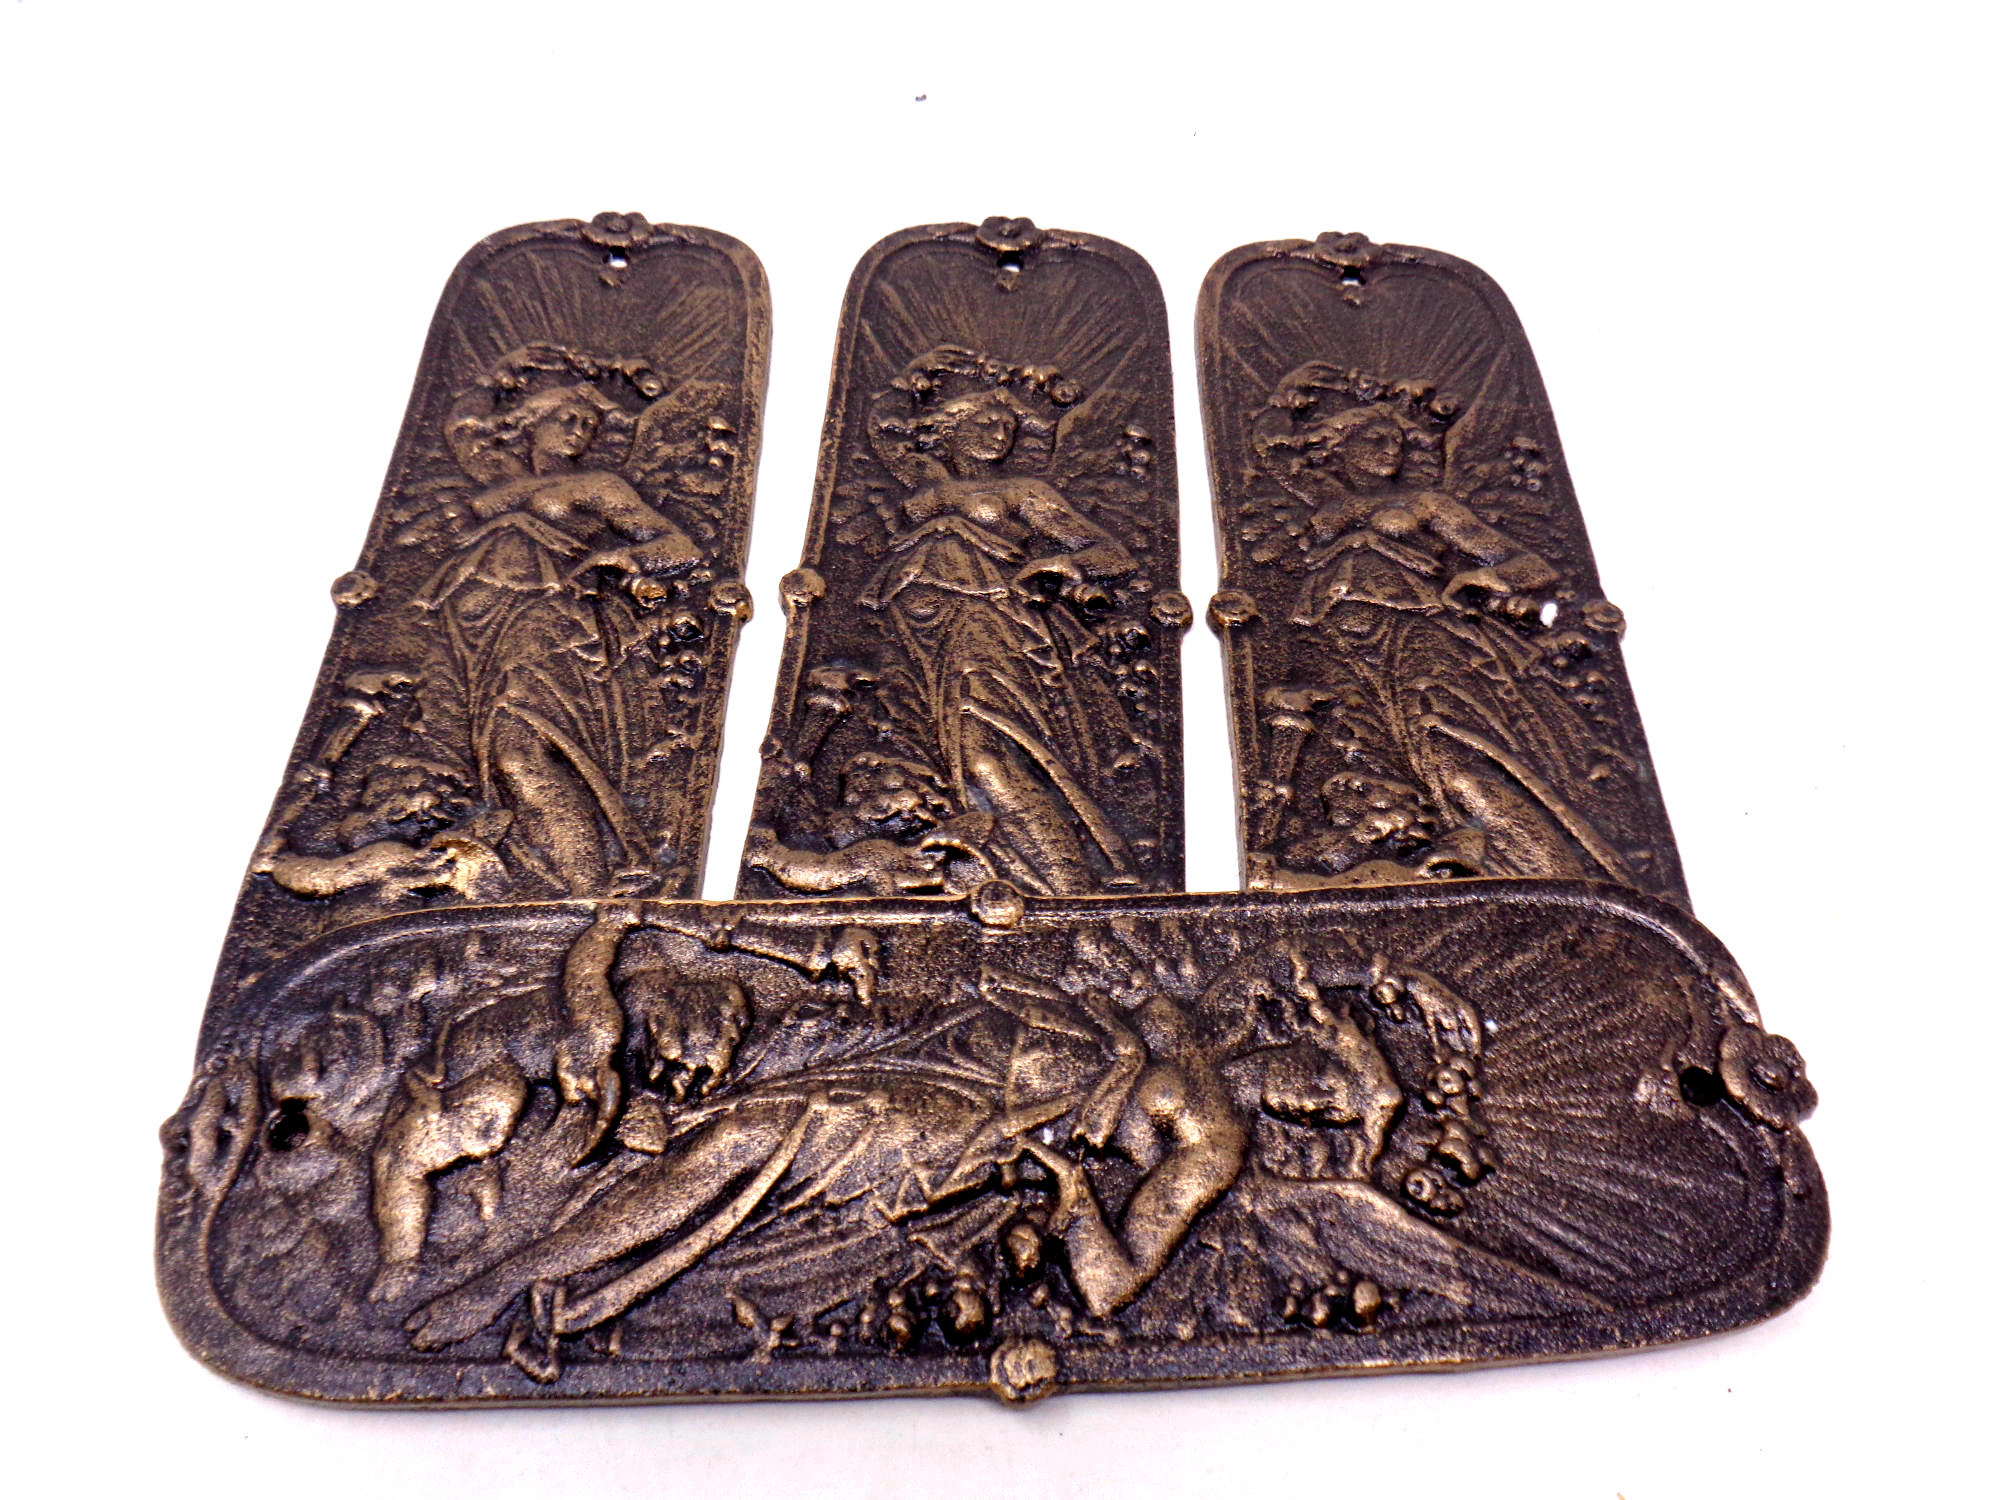 Four cast iron Art Nouveau style door finger plates